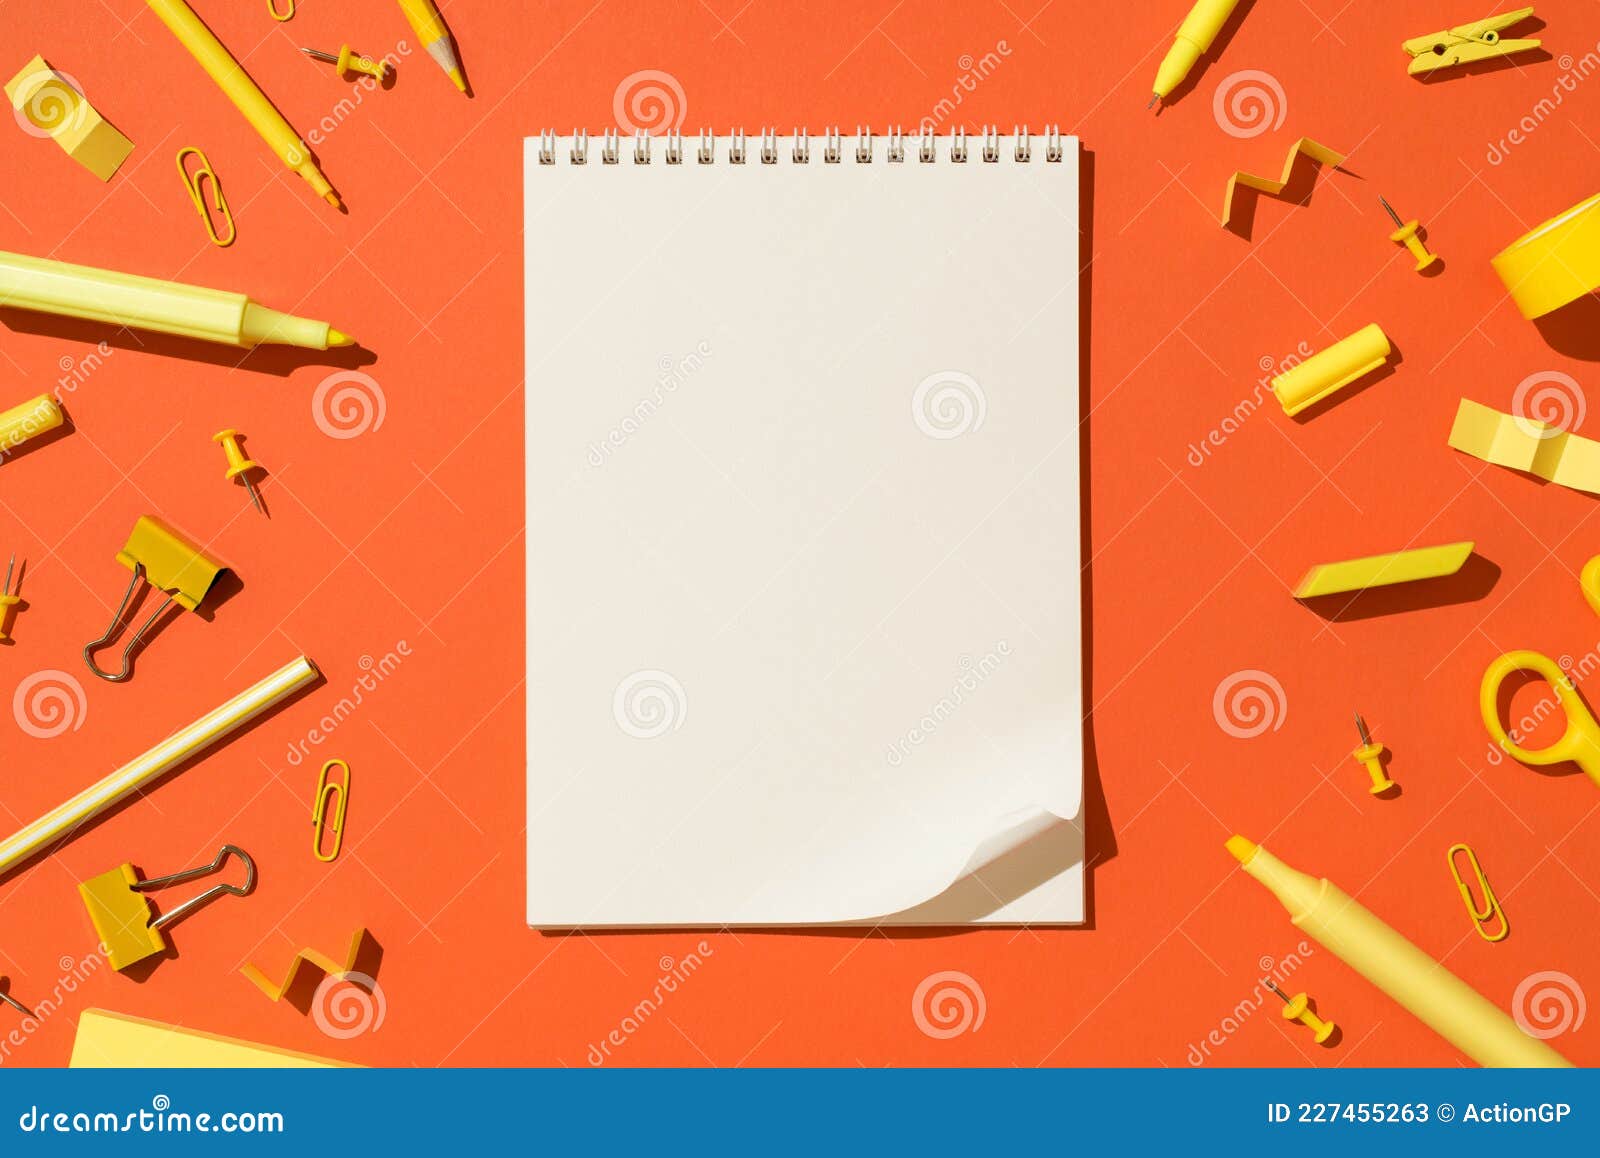 Spiral notepad là một công cụ hữu ích cho việc ghi chép và lập kế hoạch. Xem các hình ảnh theo góc nhìn trên của cuốn sổ tay để tìm hiểu về cách sử dụng và tận dụng tối đa tính năng của spiral notepad.